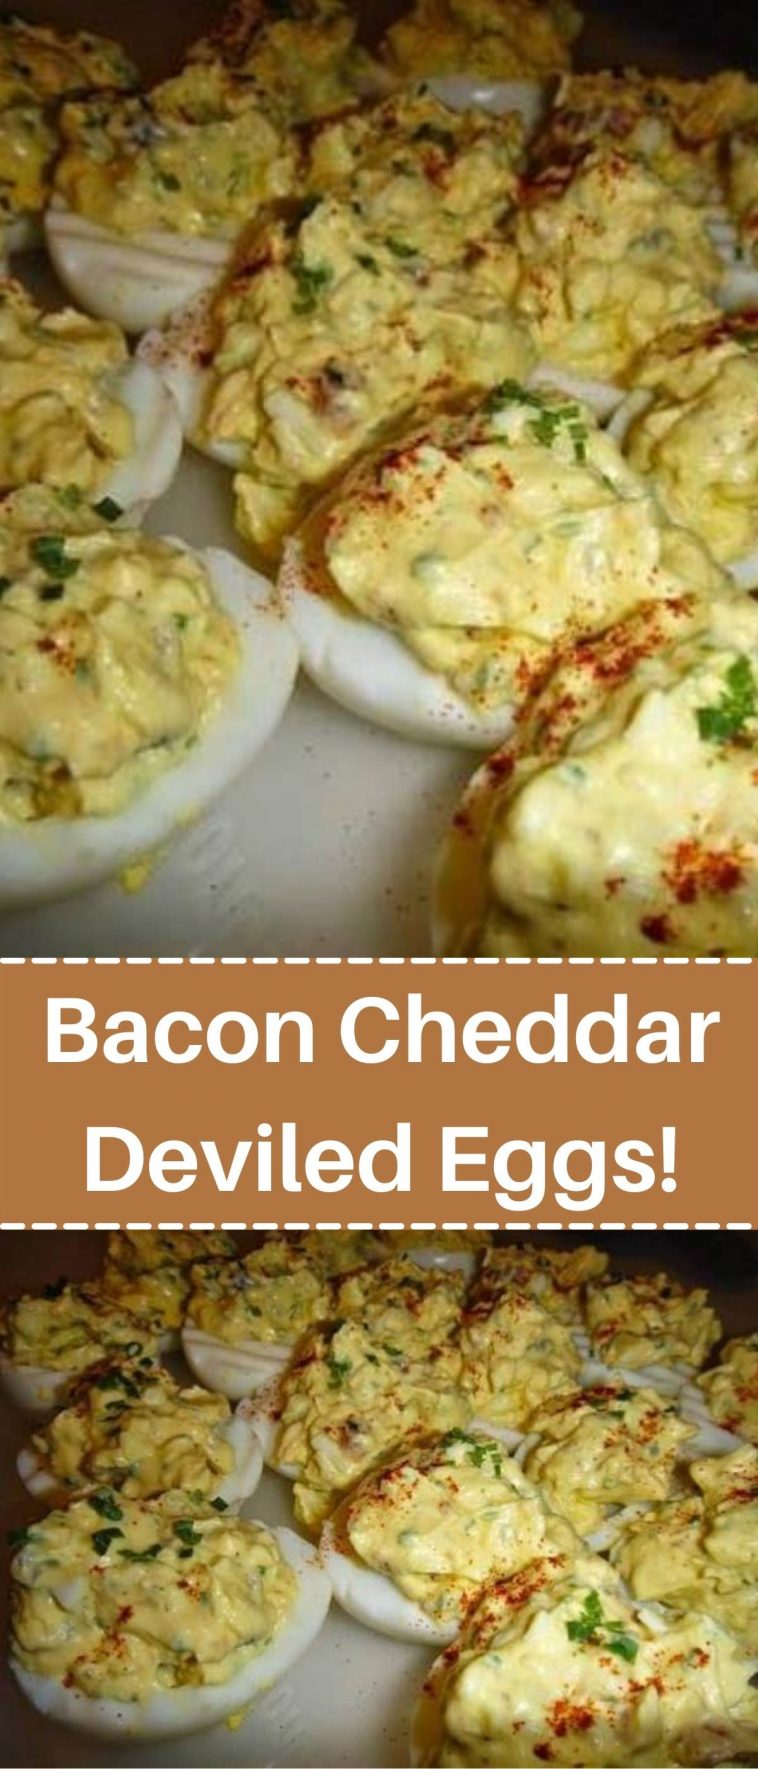 Bacon Cheddar Deviled Eggs!